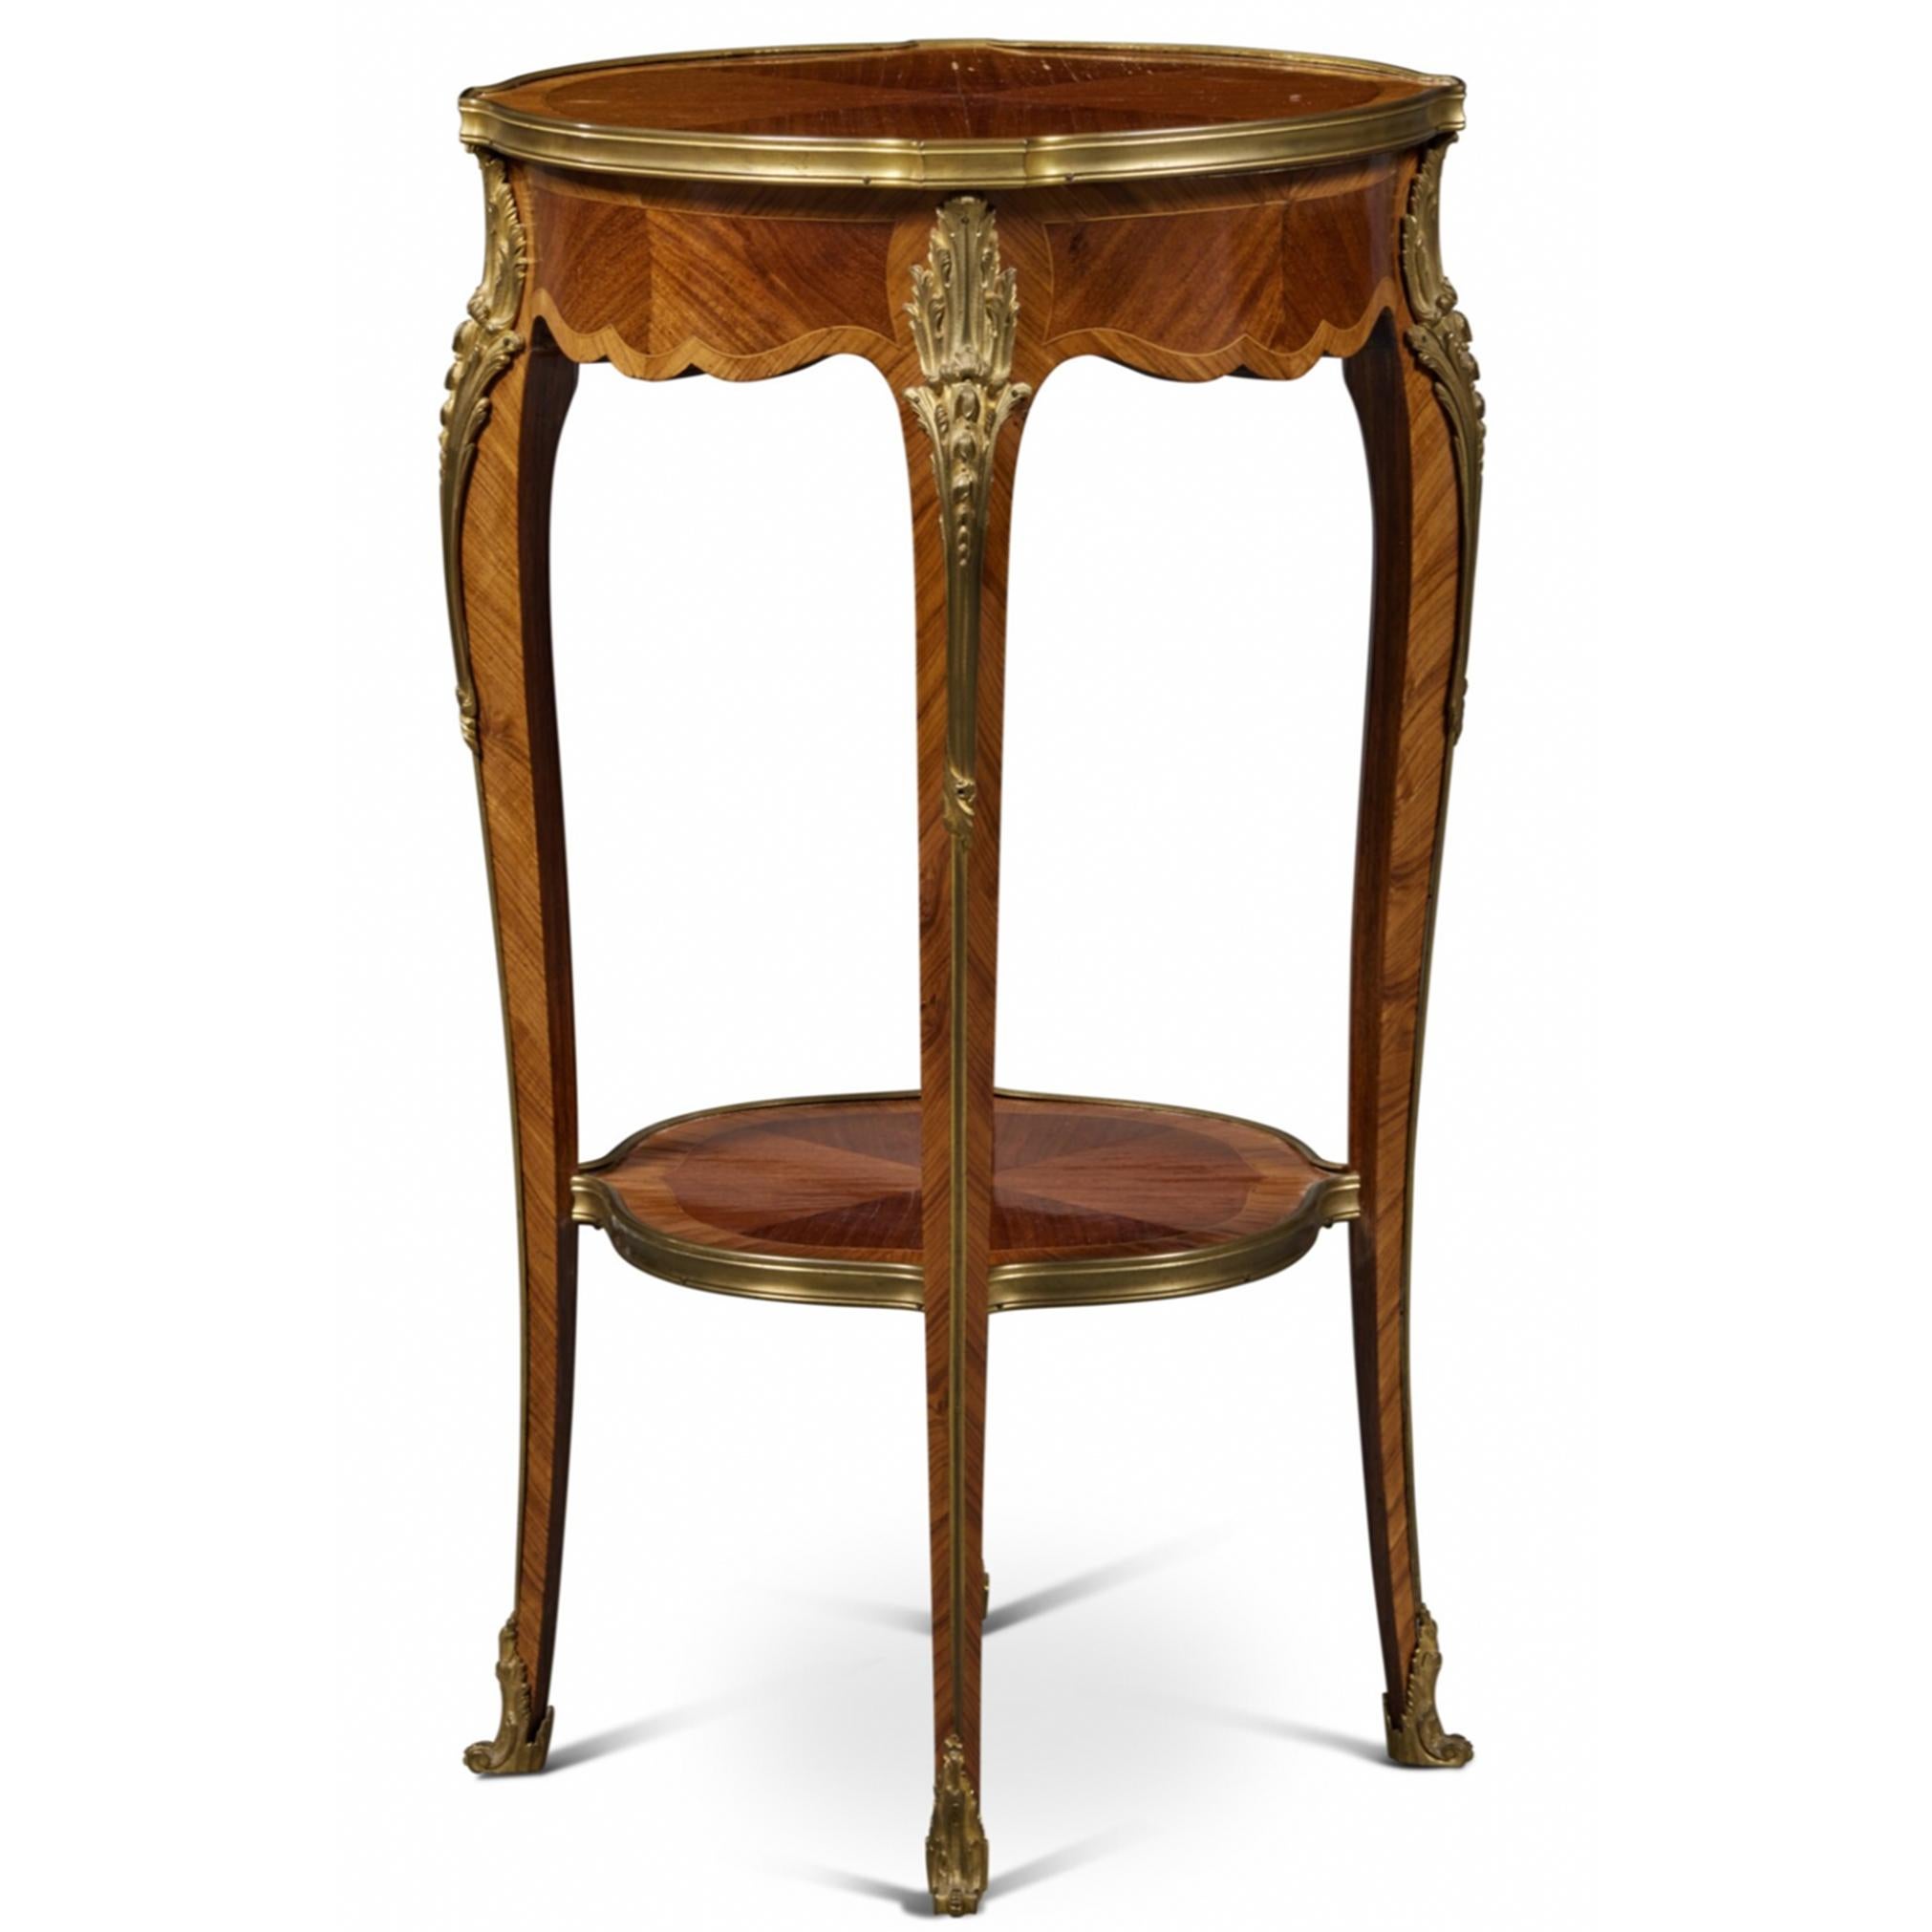 Table d'appoint en bois satiné et bois de roi, de style Louis XV et montée en bronze doré, CIRCA, avec un placage brillamment détaillé, mettant en valeur trois nuances de bois dans des bruns contrastés, créant un design simple et séduisant. 

74.9